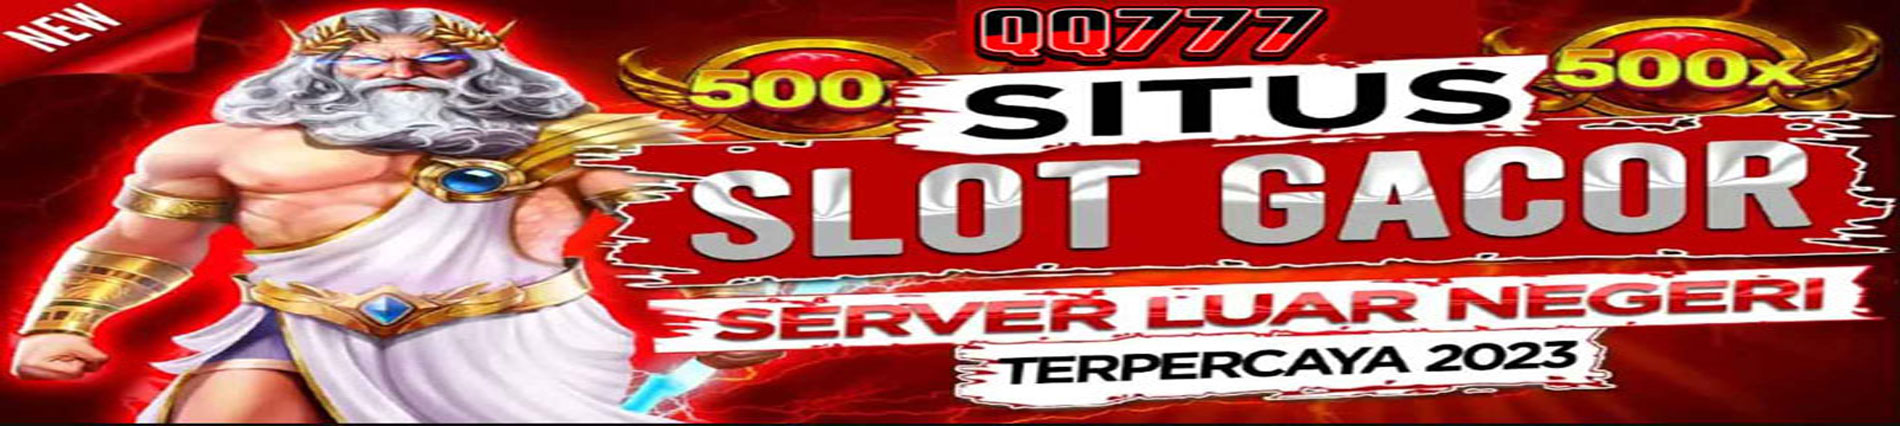 QQ777 situs gacor server luar negri